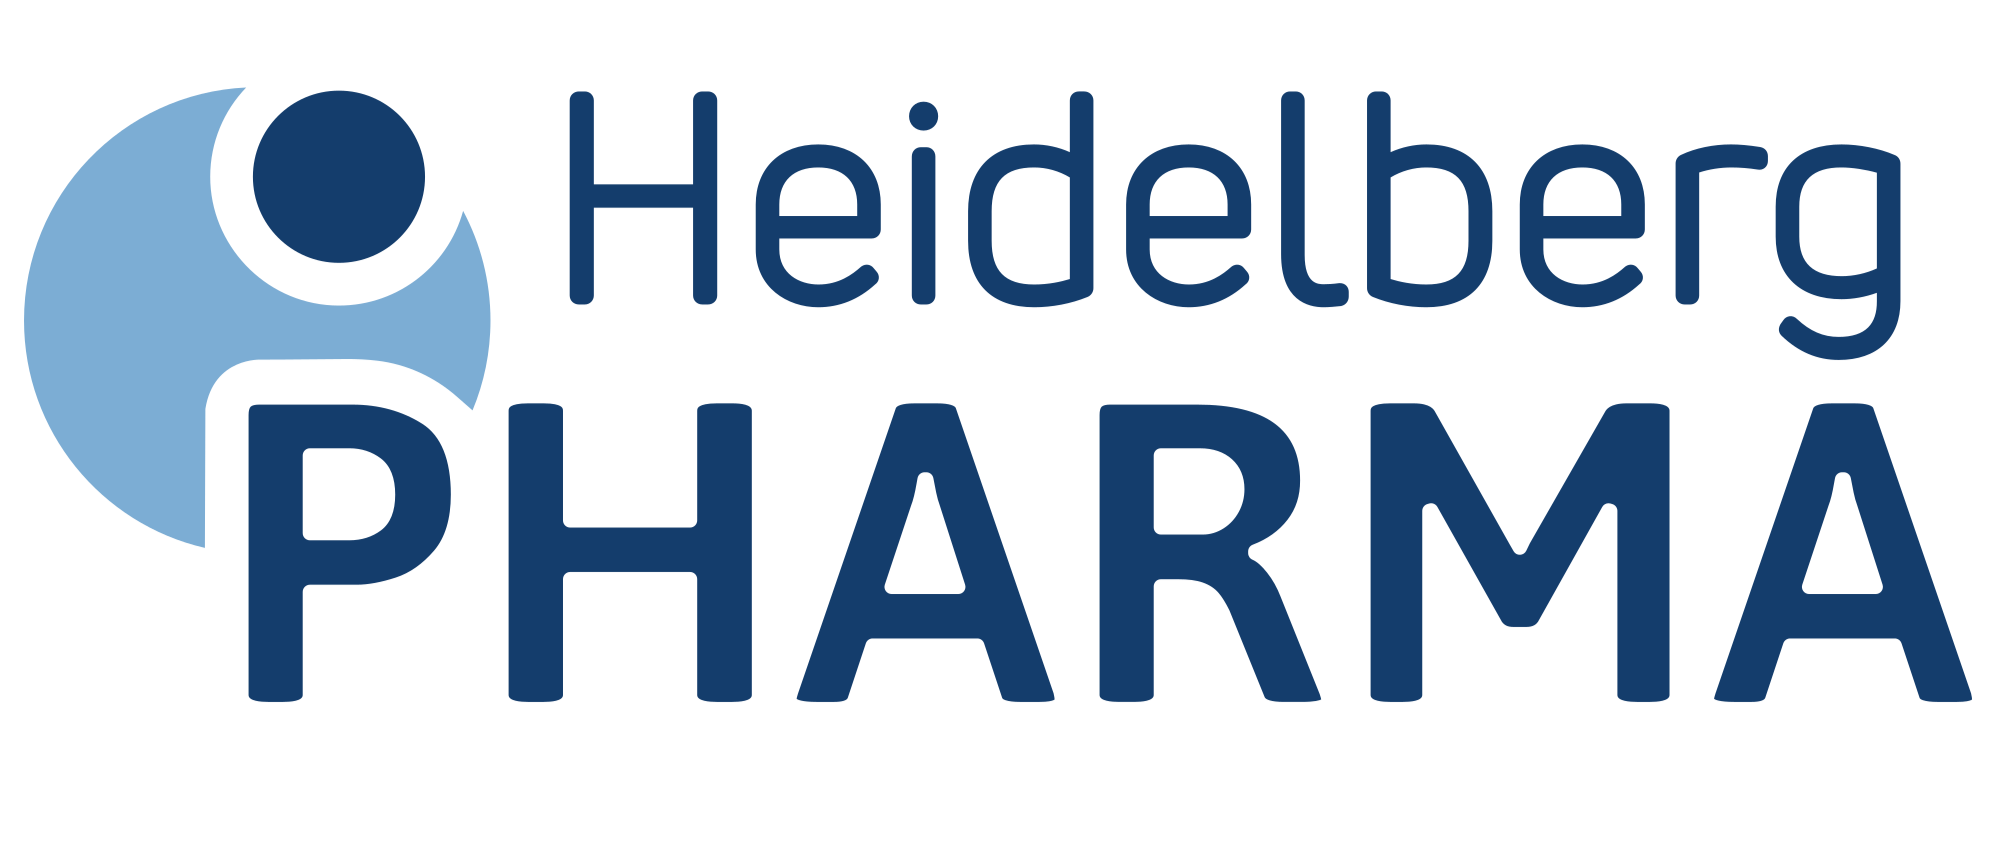 Heidelberg Pharma AG logo